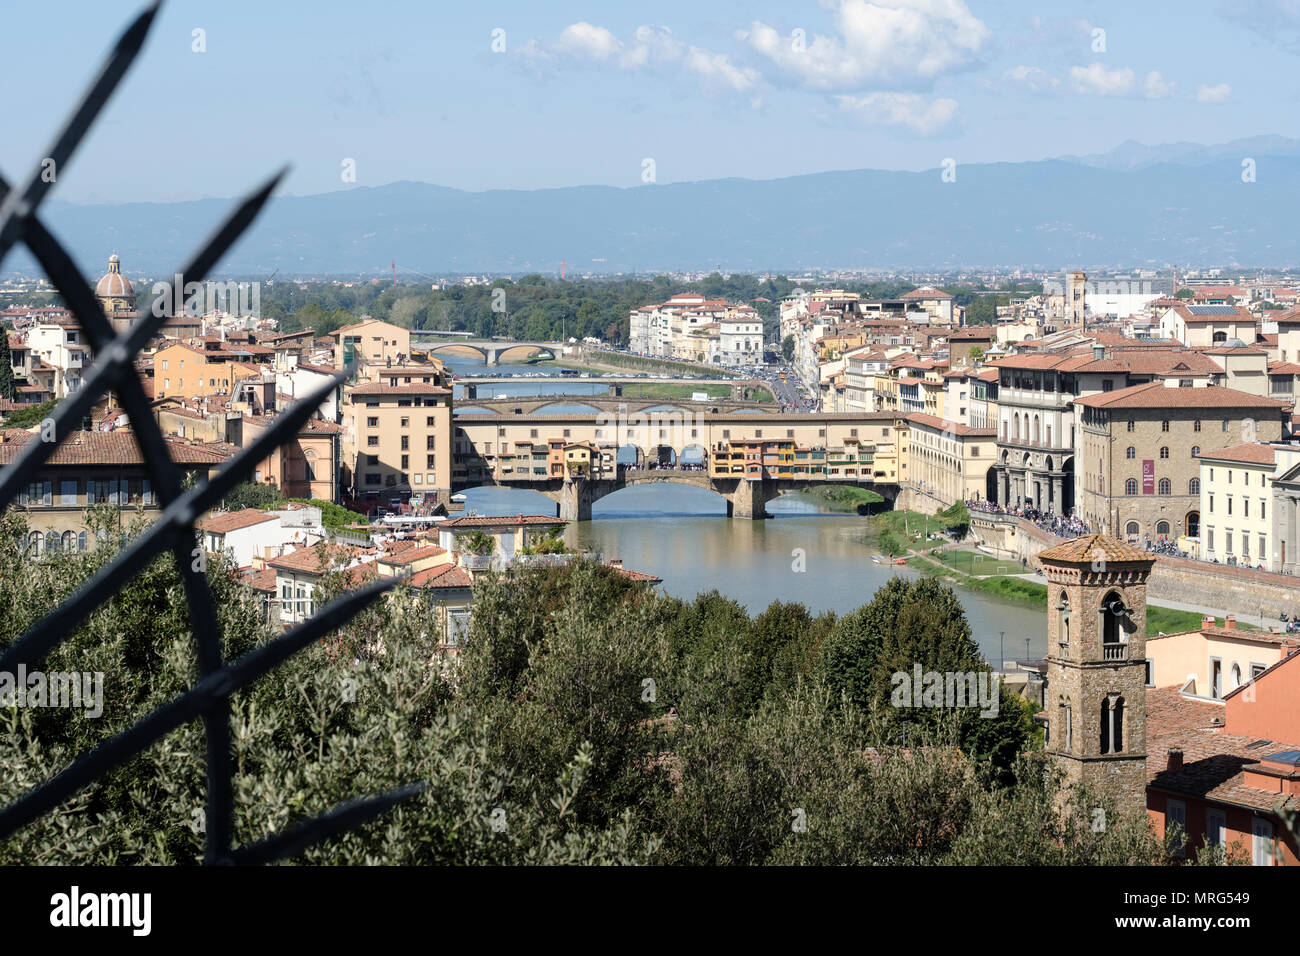 Alto mirador hacia abajo hacia el río Arno, el Ponte Vecchio en la media distancia, Florencia, Toscana, Italia, Europa Foto de stock